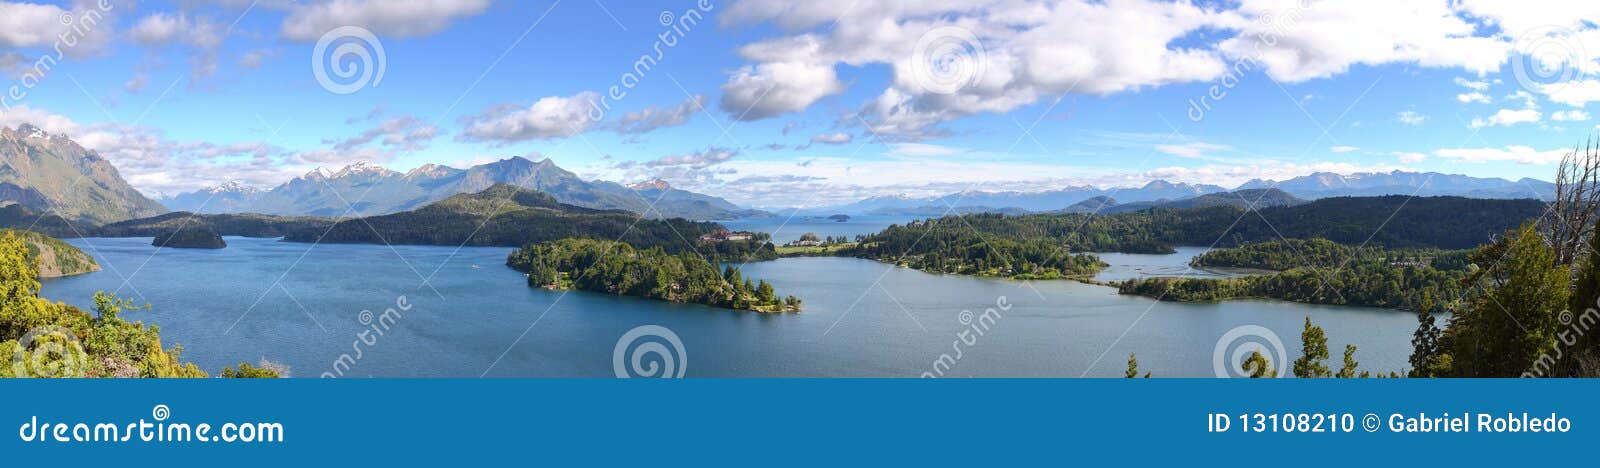 panoramic view of lake nahuel huapi